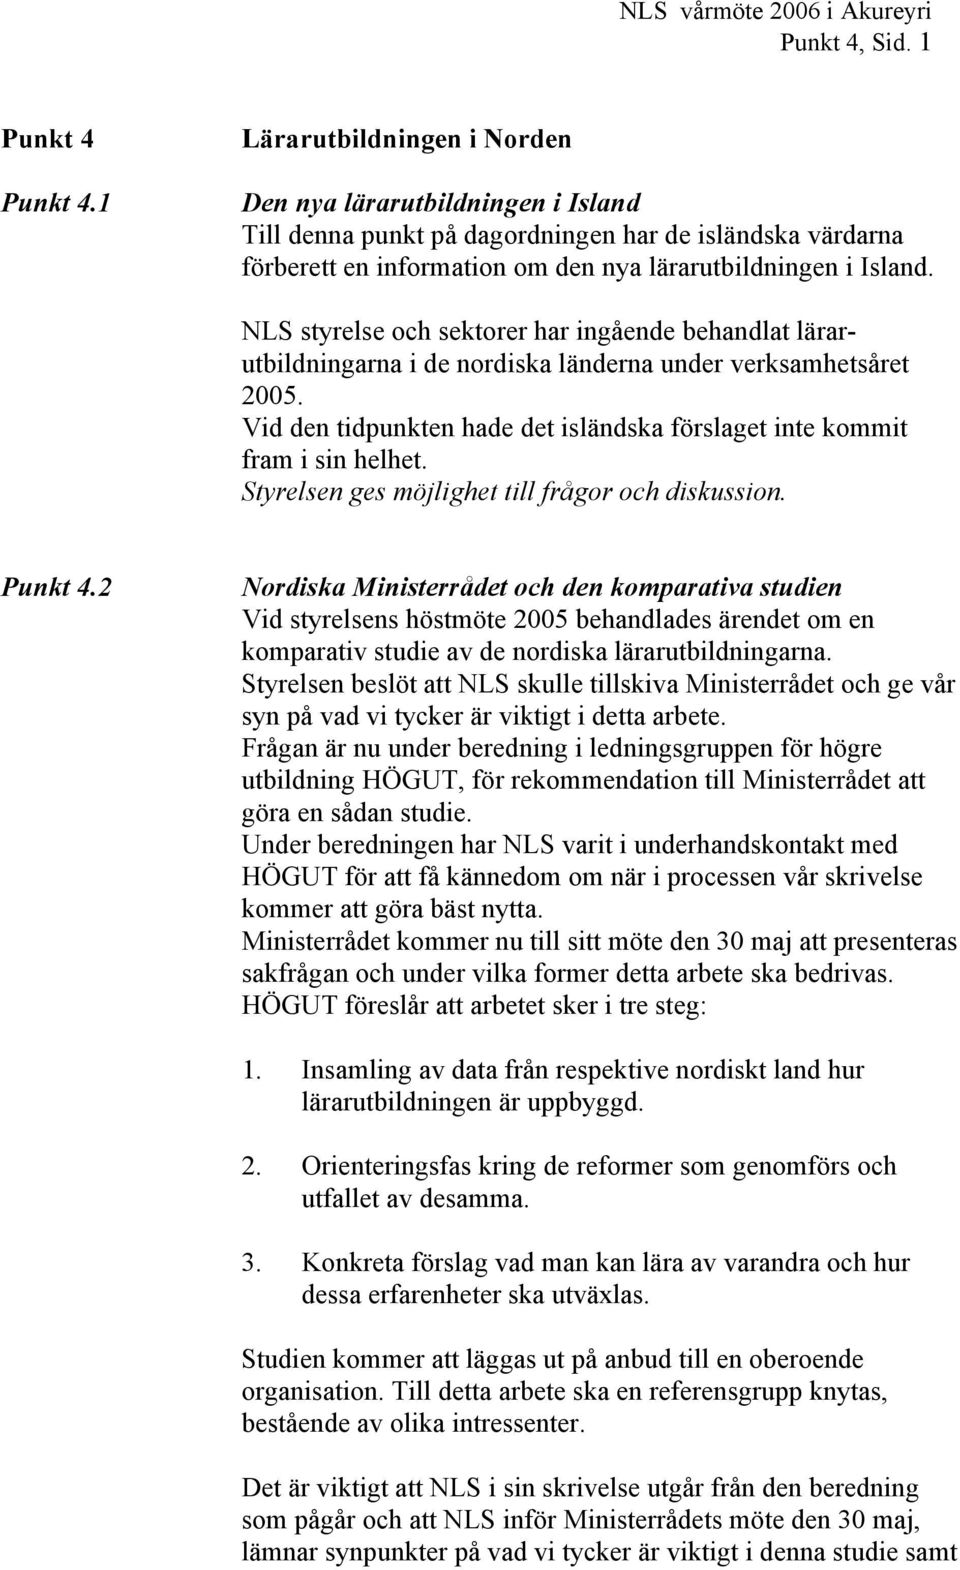 NLS styrelse och sektorer har ingående behandlat lärarutbildningarna i de nordiska länderna under verksamhetsåret 2005. Vid den tidpunkten hade det isländska förslaget inte kommit fram i sin helhet.